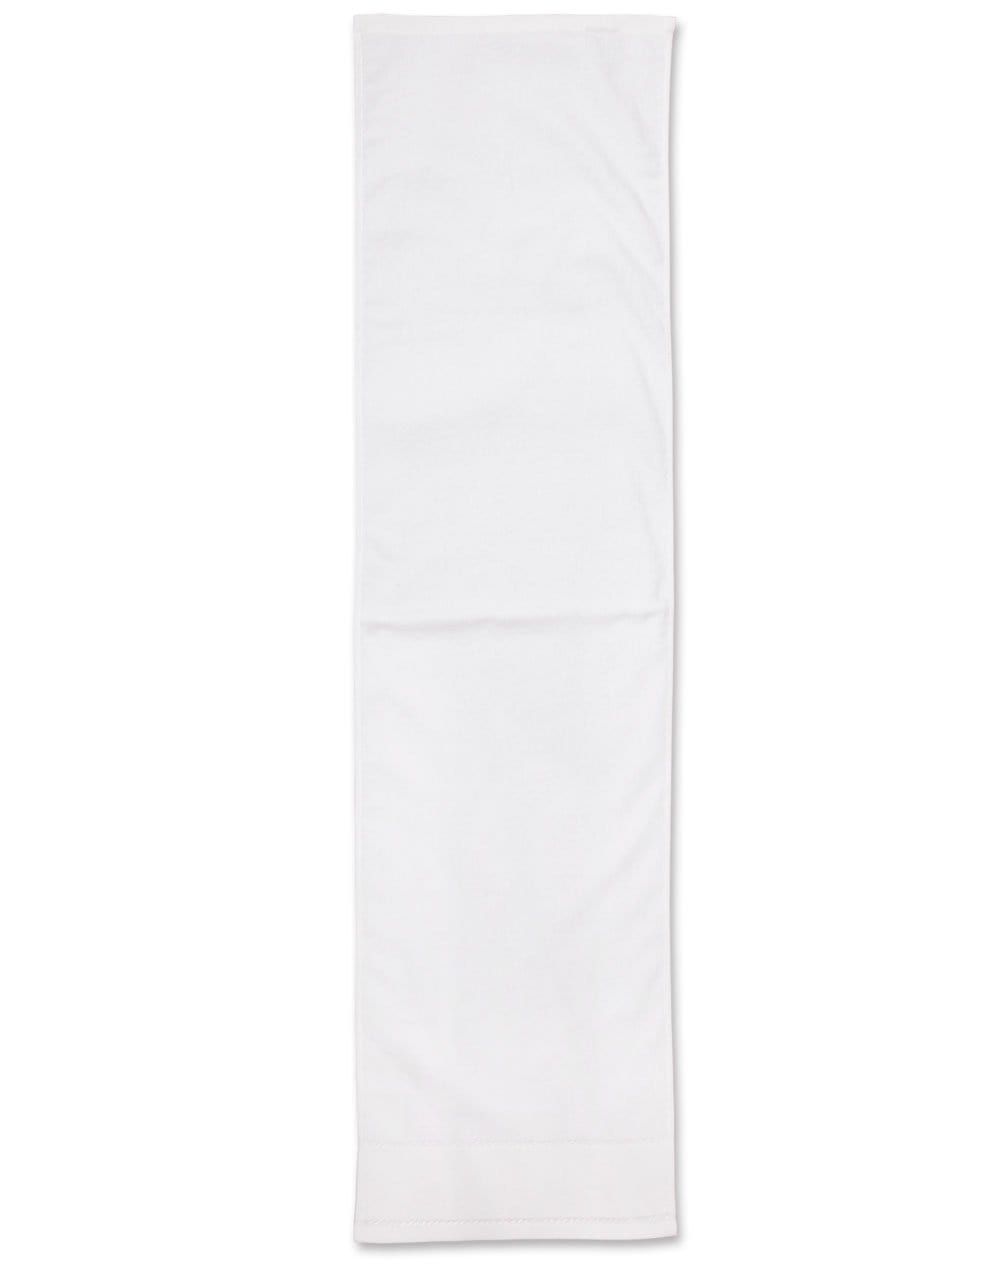 Fitness Towel TW05 Work Wear Australian Industrial Wear 110cm x 30cm White 